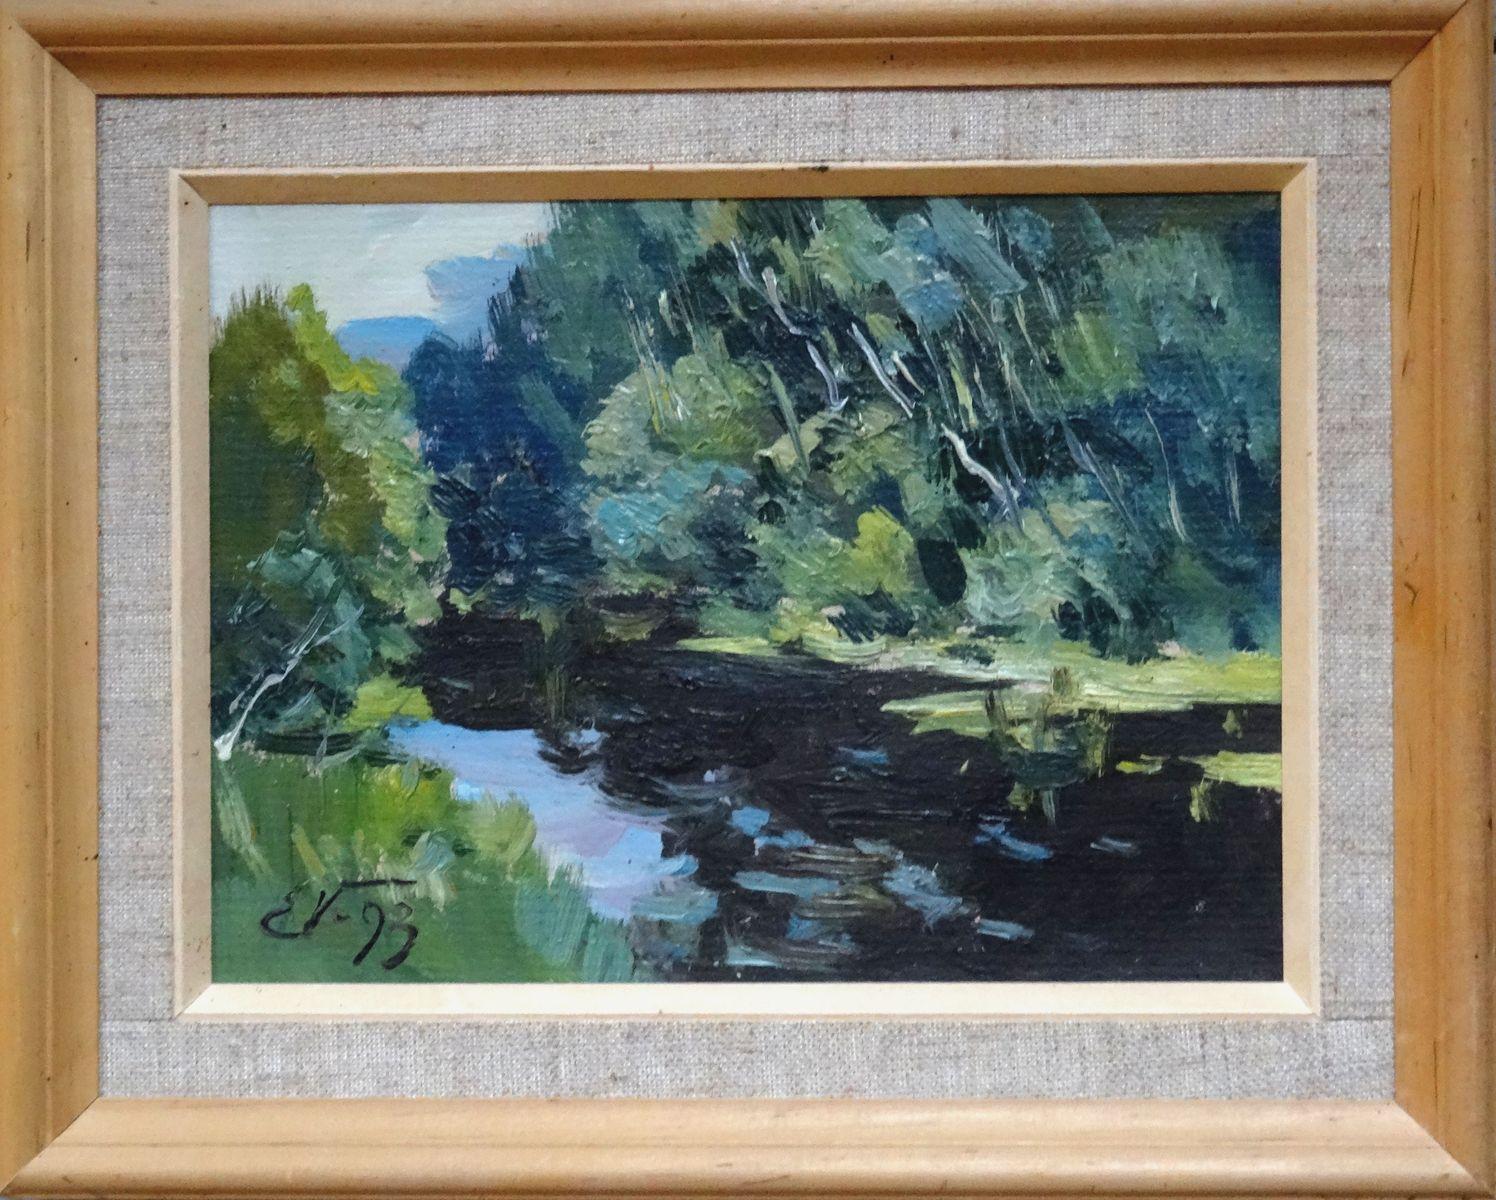 River in spring. 1993. Cardboard, oil, 23x32 cm - Painting by Edgars Vinters